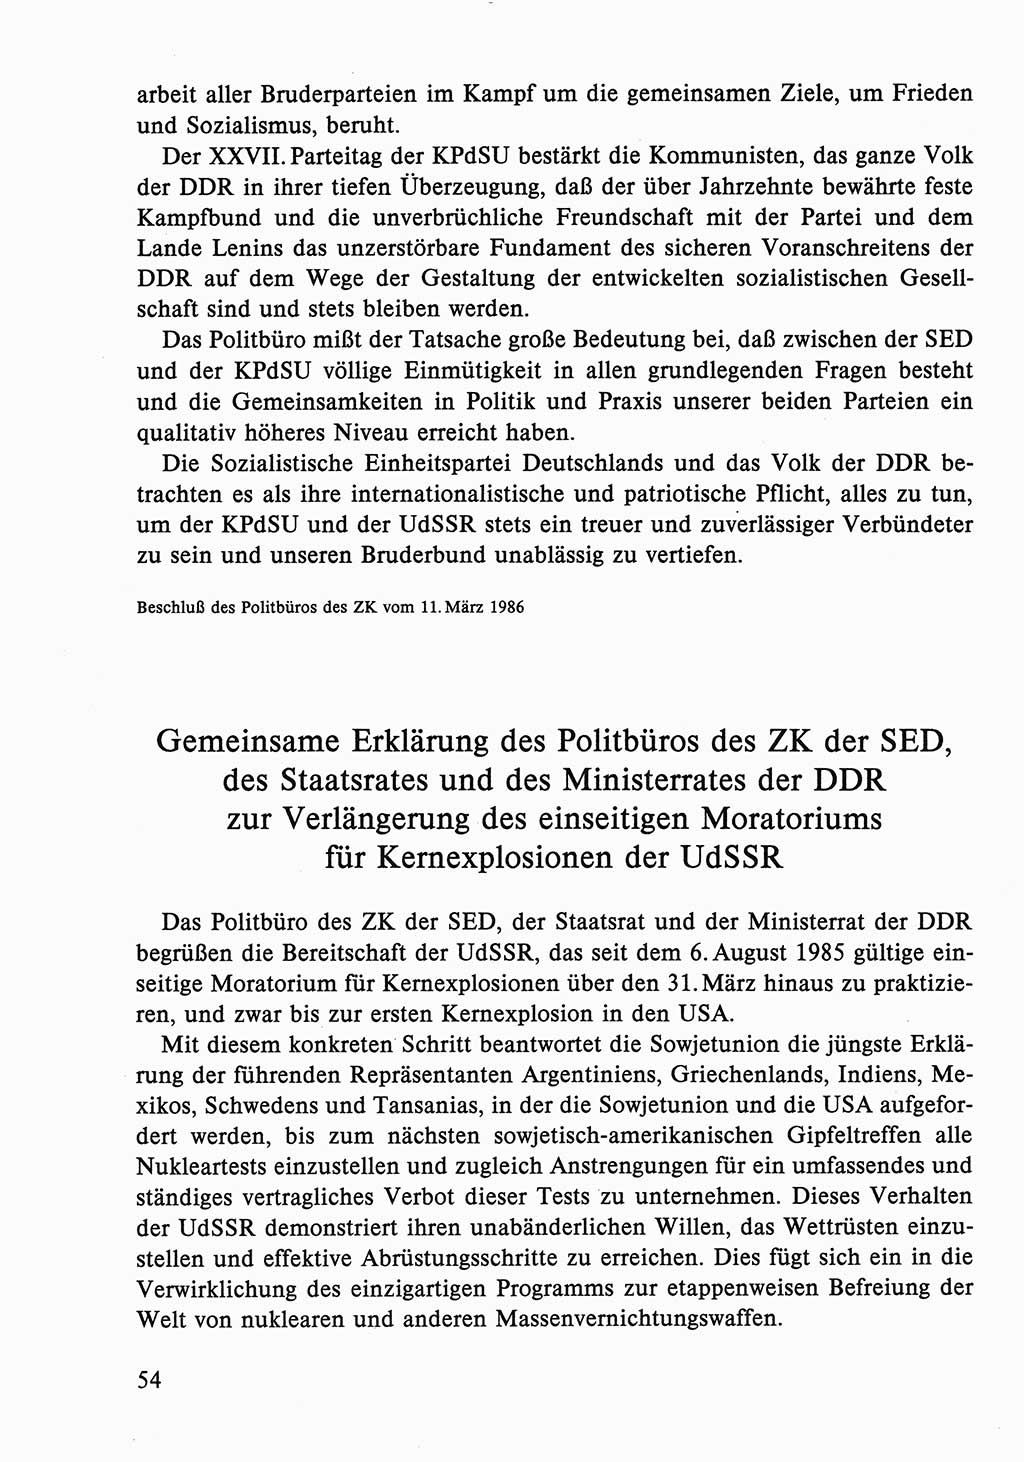 Dokumente der Sozialistischen Einheitspartei Deutschlands (SED) [Deutsche Demokratische Republik (DDR)] 1986-1987, Seite 54 (Dok. SED DDR 1986-1987, S. 54)